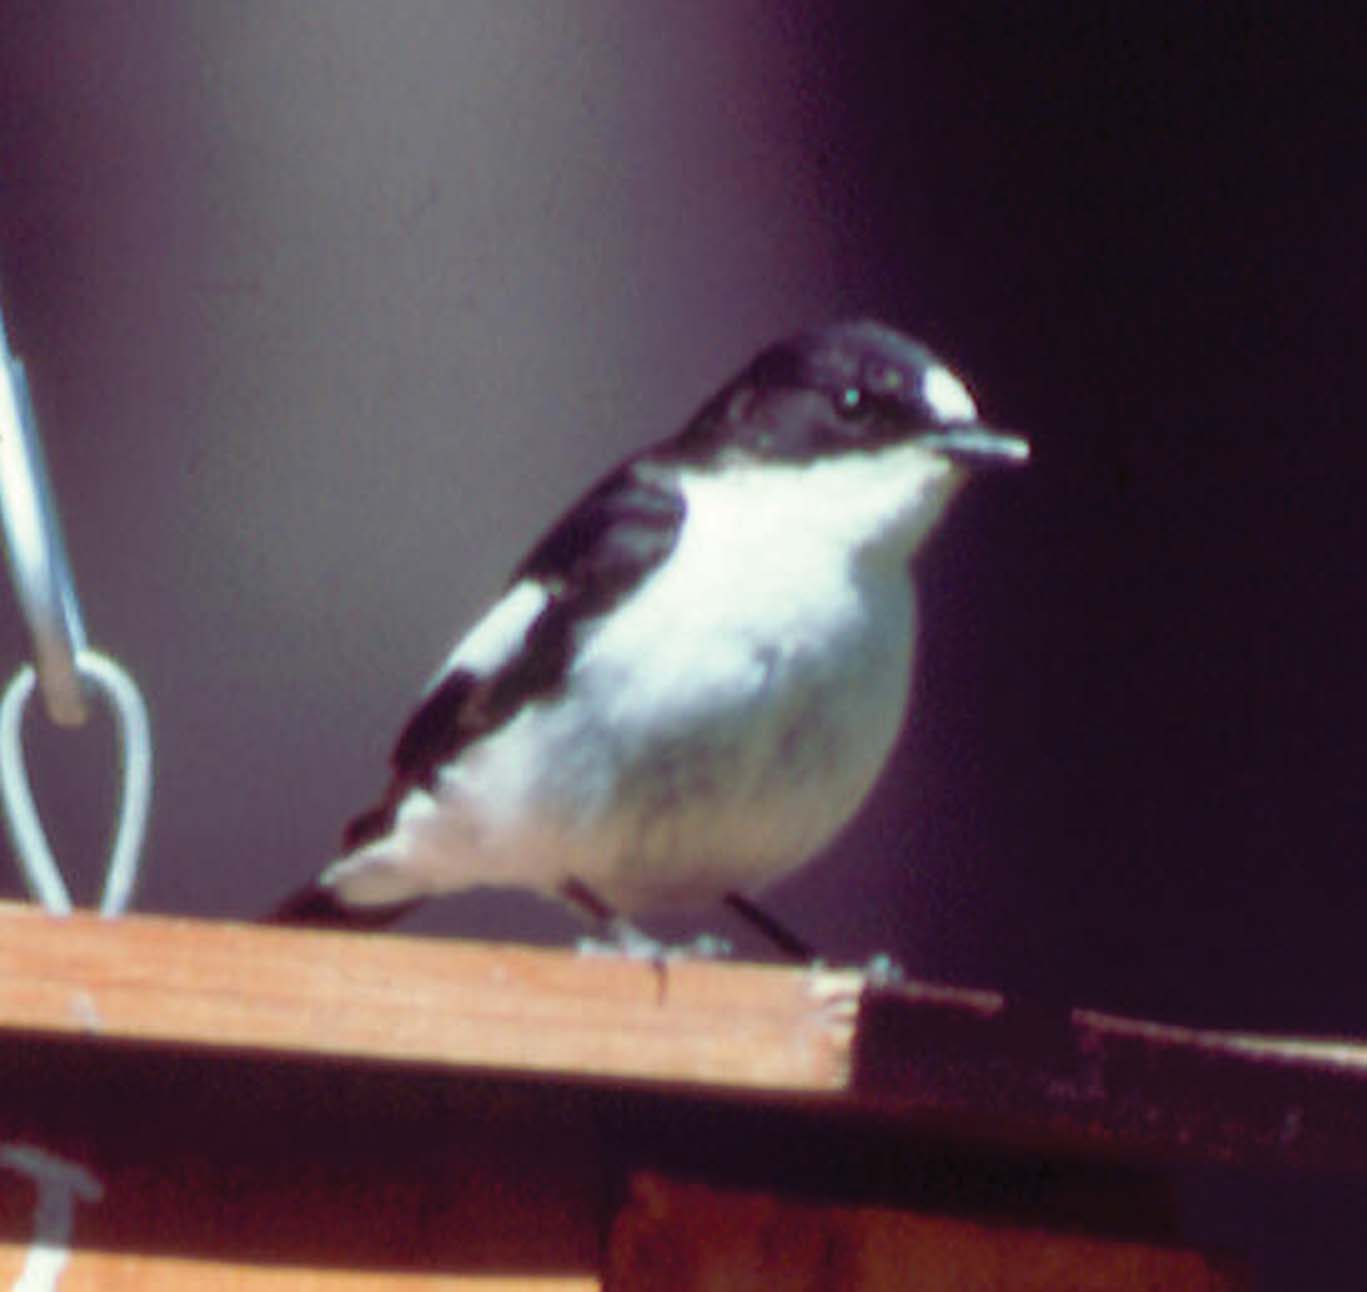 En la foto aparecen dos ejemplares juveniles de lúgano; el individuo de la izquierda, más grisáceo, es presumiblemente una hembra, mientras que el de la derecha,